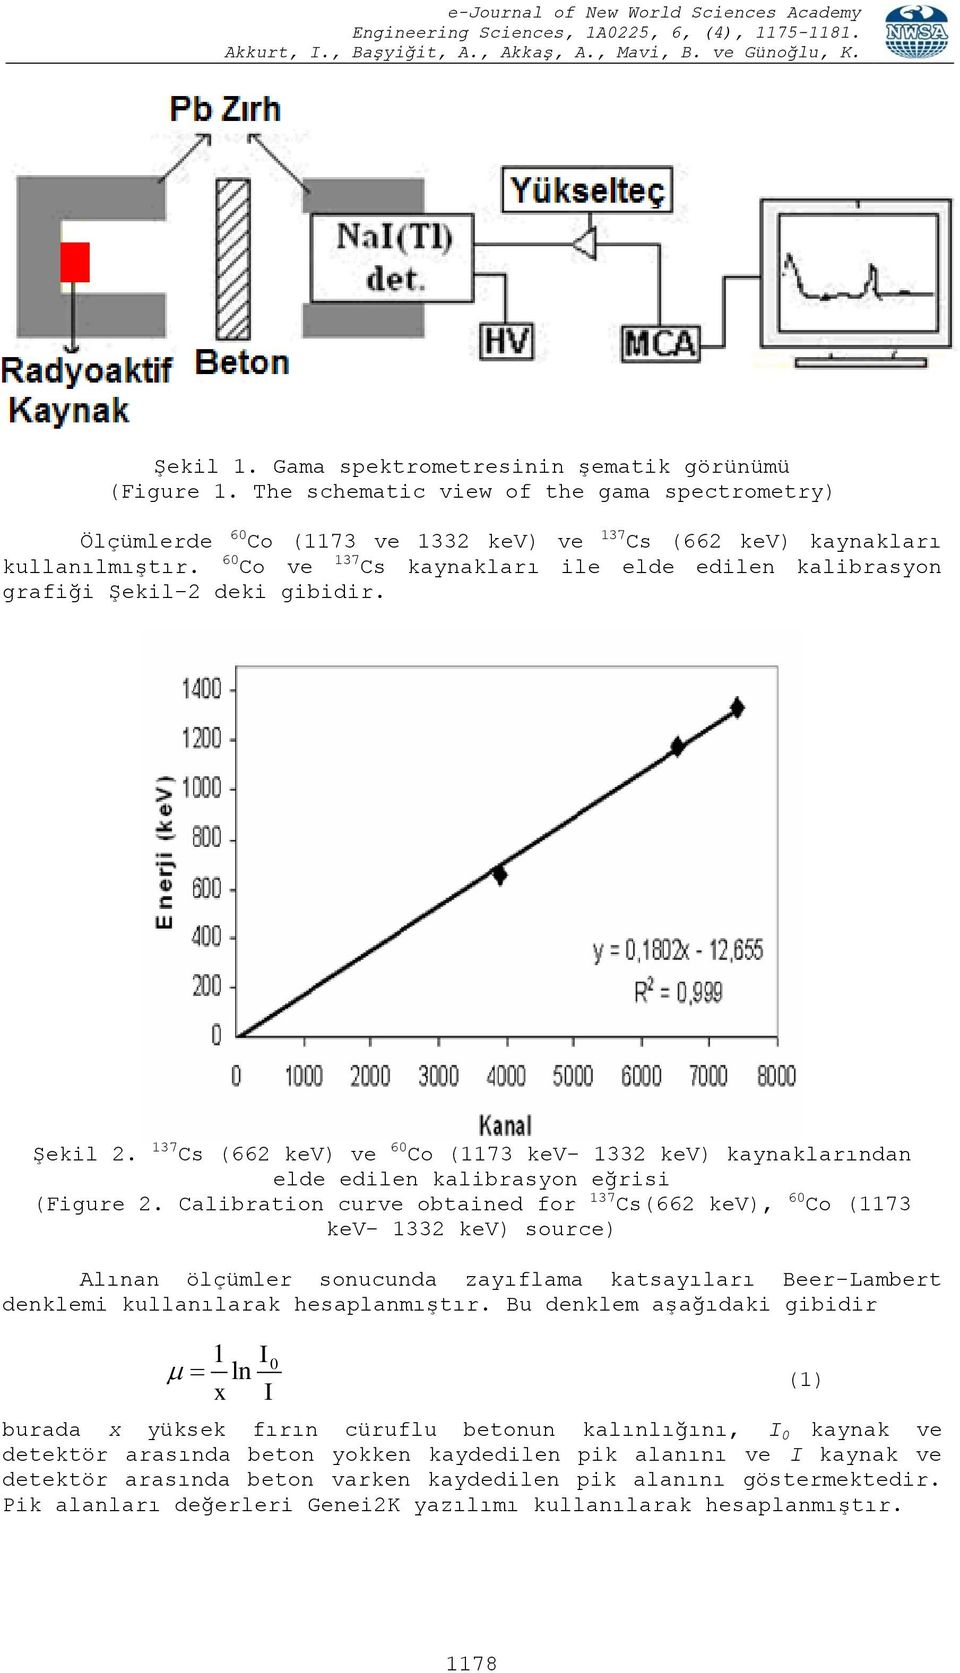 Calibration curve obtained for 137 Cs(662 kev), 60 Co (1173 kev- 1332 kev) source) Alınan ölçümler sonucunda zayıflama katsayıları Beer-Lambert denklemi kullanılarak hesaplanmıştır.